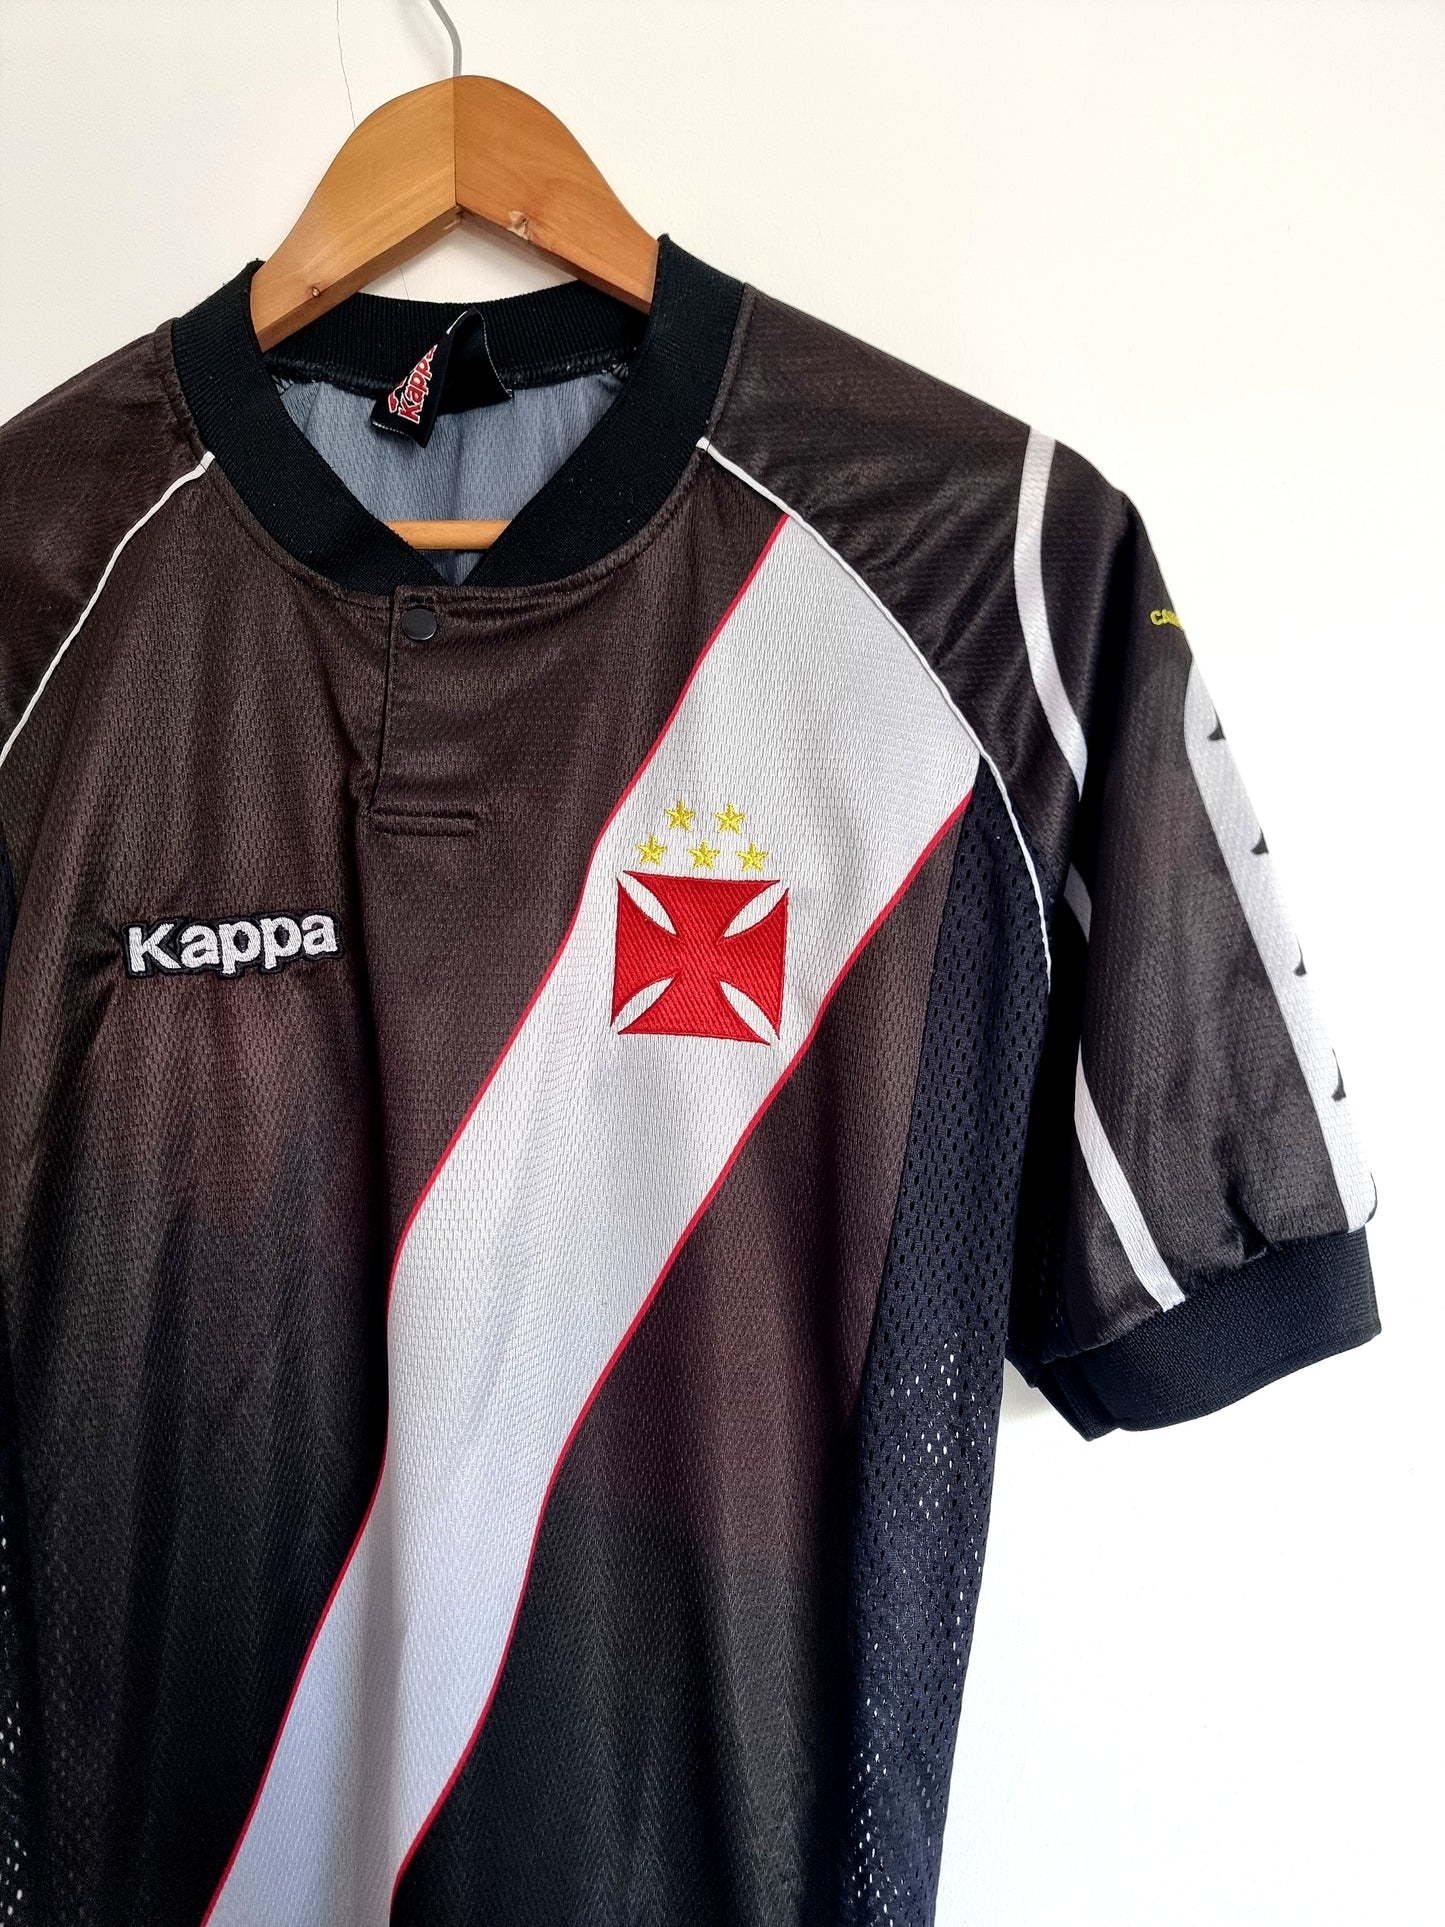 Kappa Vasco Da Gama 98/99 '10 (Ramon)' Away Shirt Medium